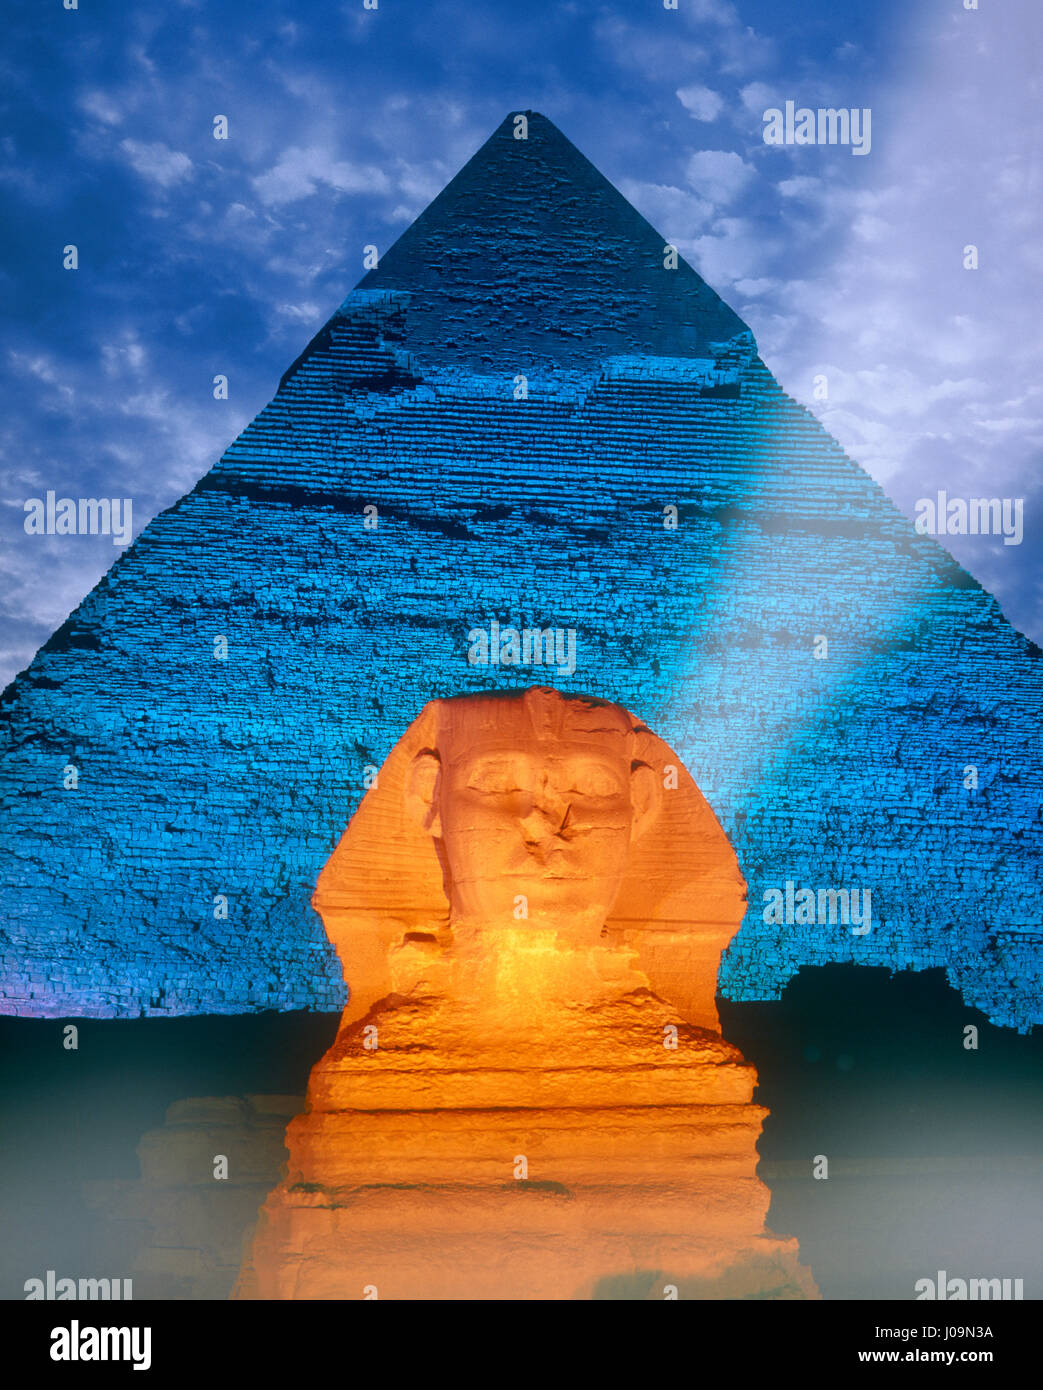 Spinx e piramide illuminata di notte, Giza, Cairo, Egitto. Foto Stock